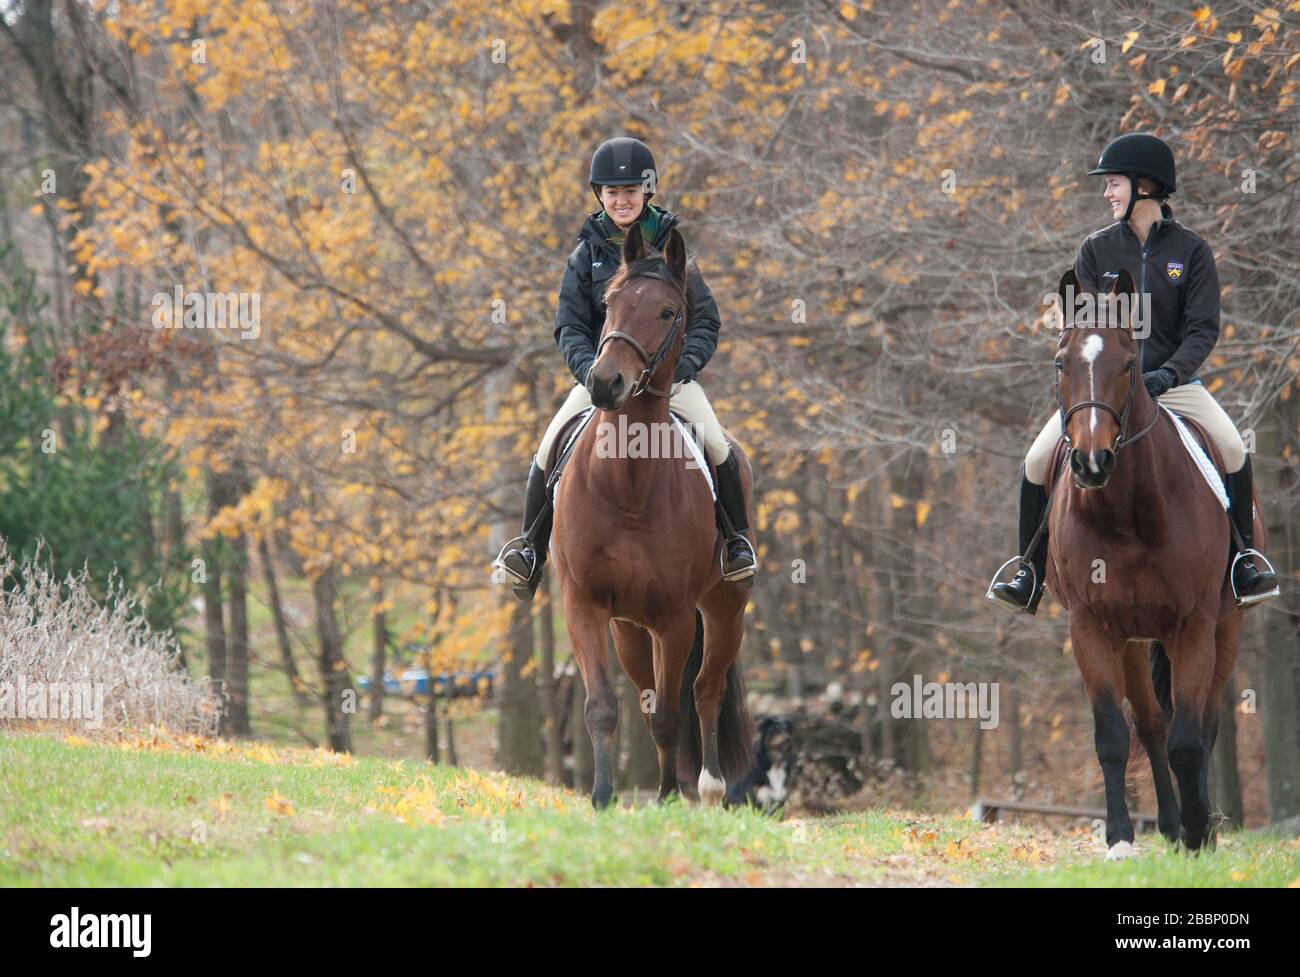 Jeune femme équestrians en équitation dans les pâturages d'automne Banque D'Images